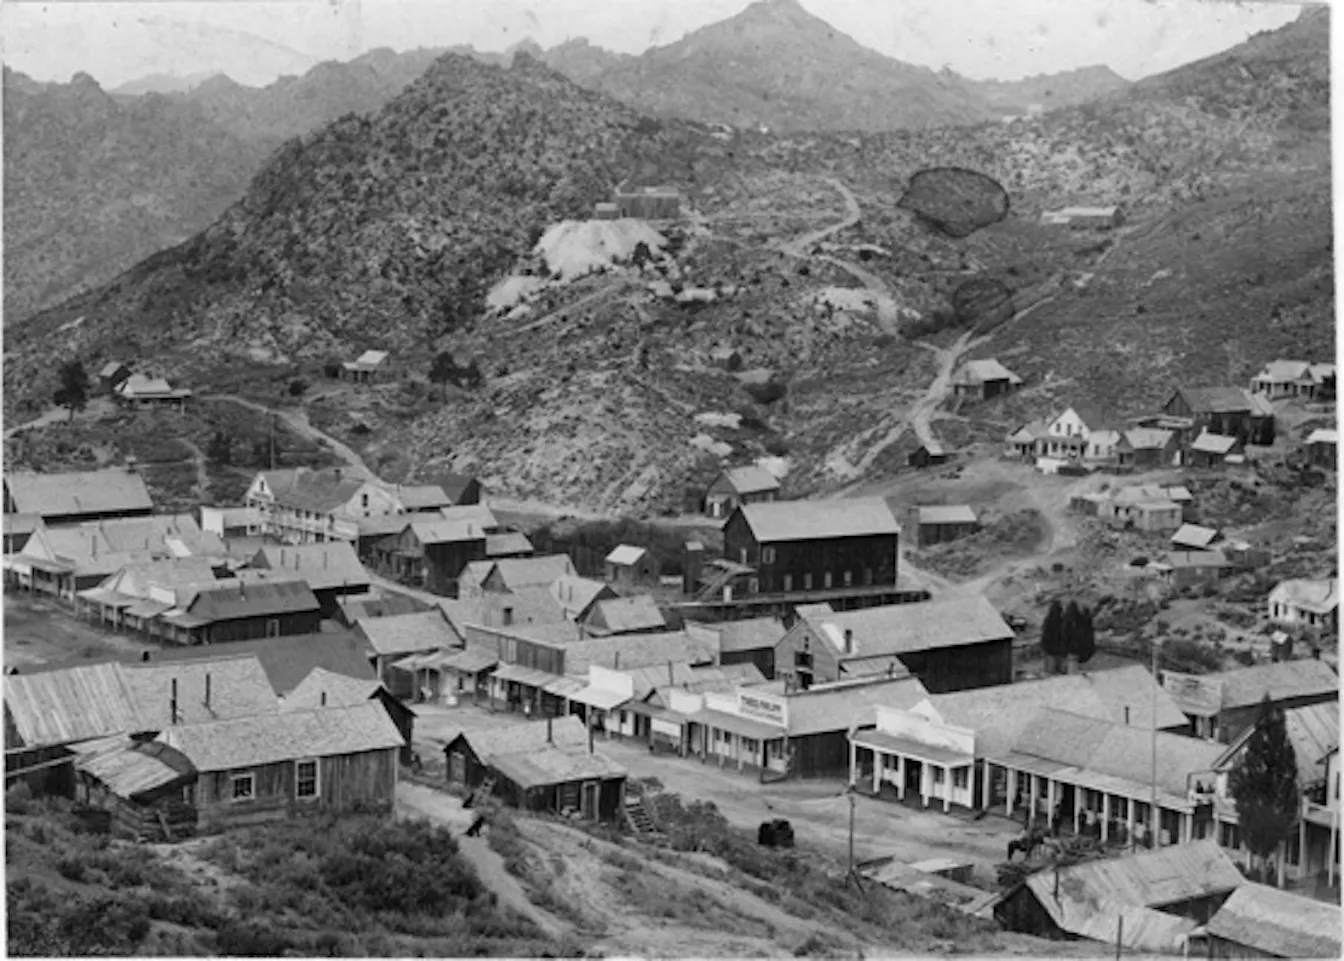 Durant el segle XIX, milers de persones es van dirigir a Silver City (a la imatge) seguint el camí dels buscadors d'or